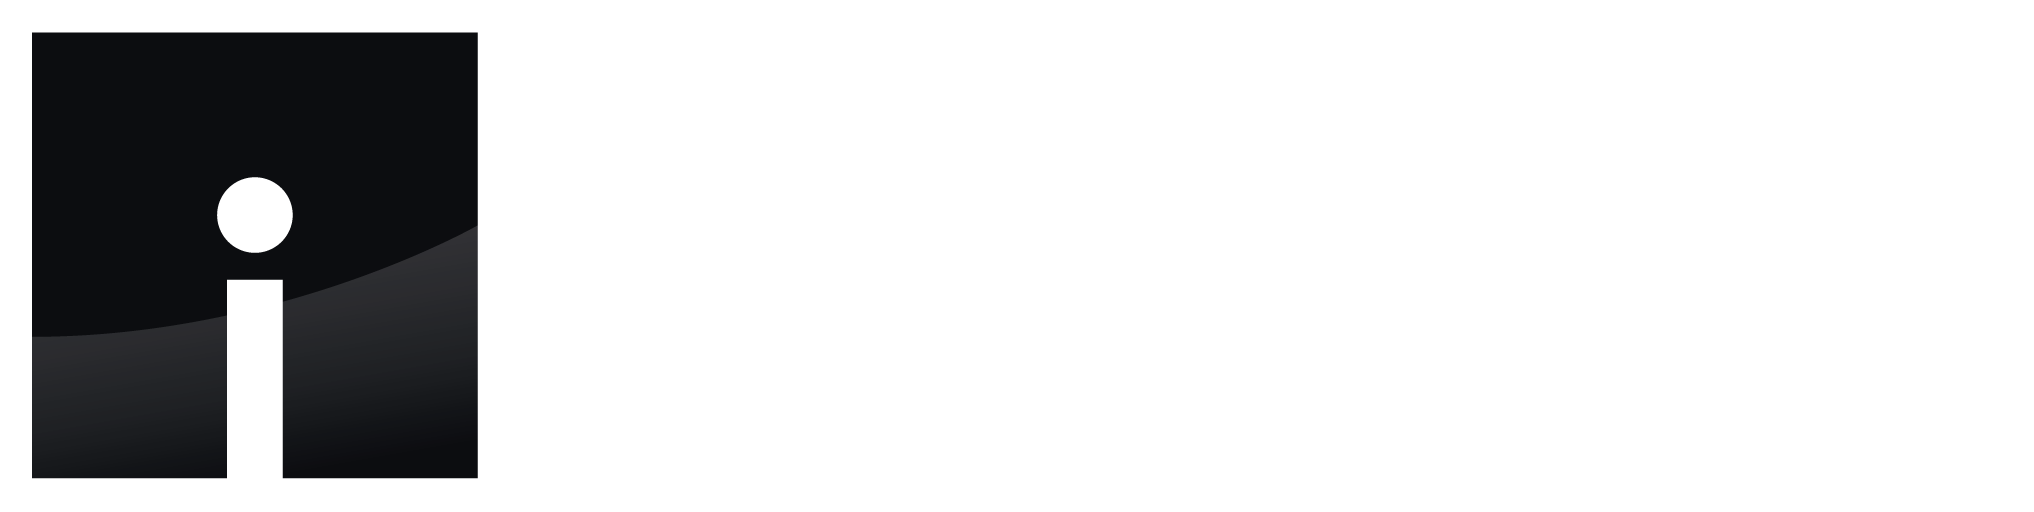 Ideal Floors Inc